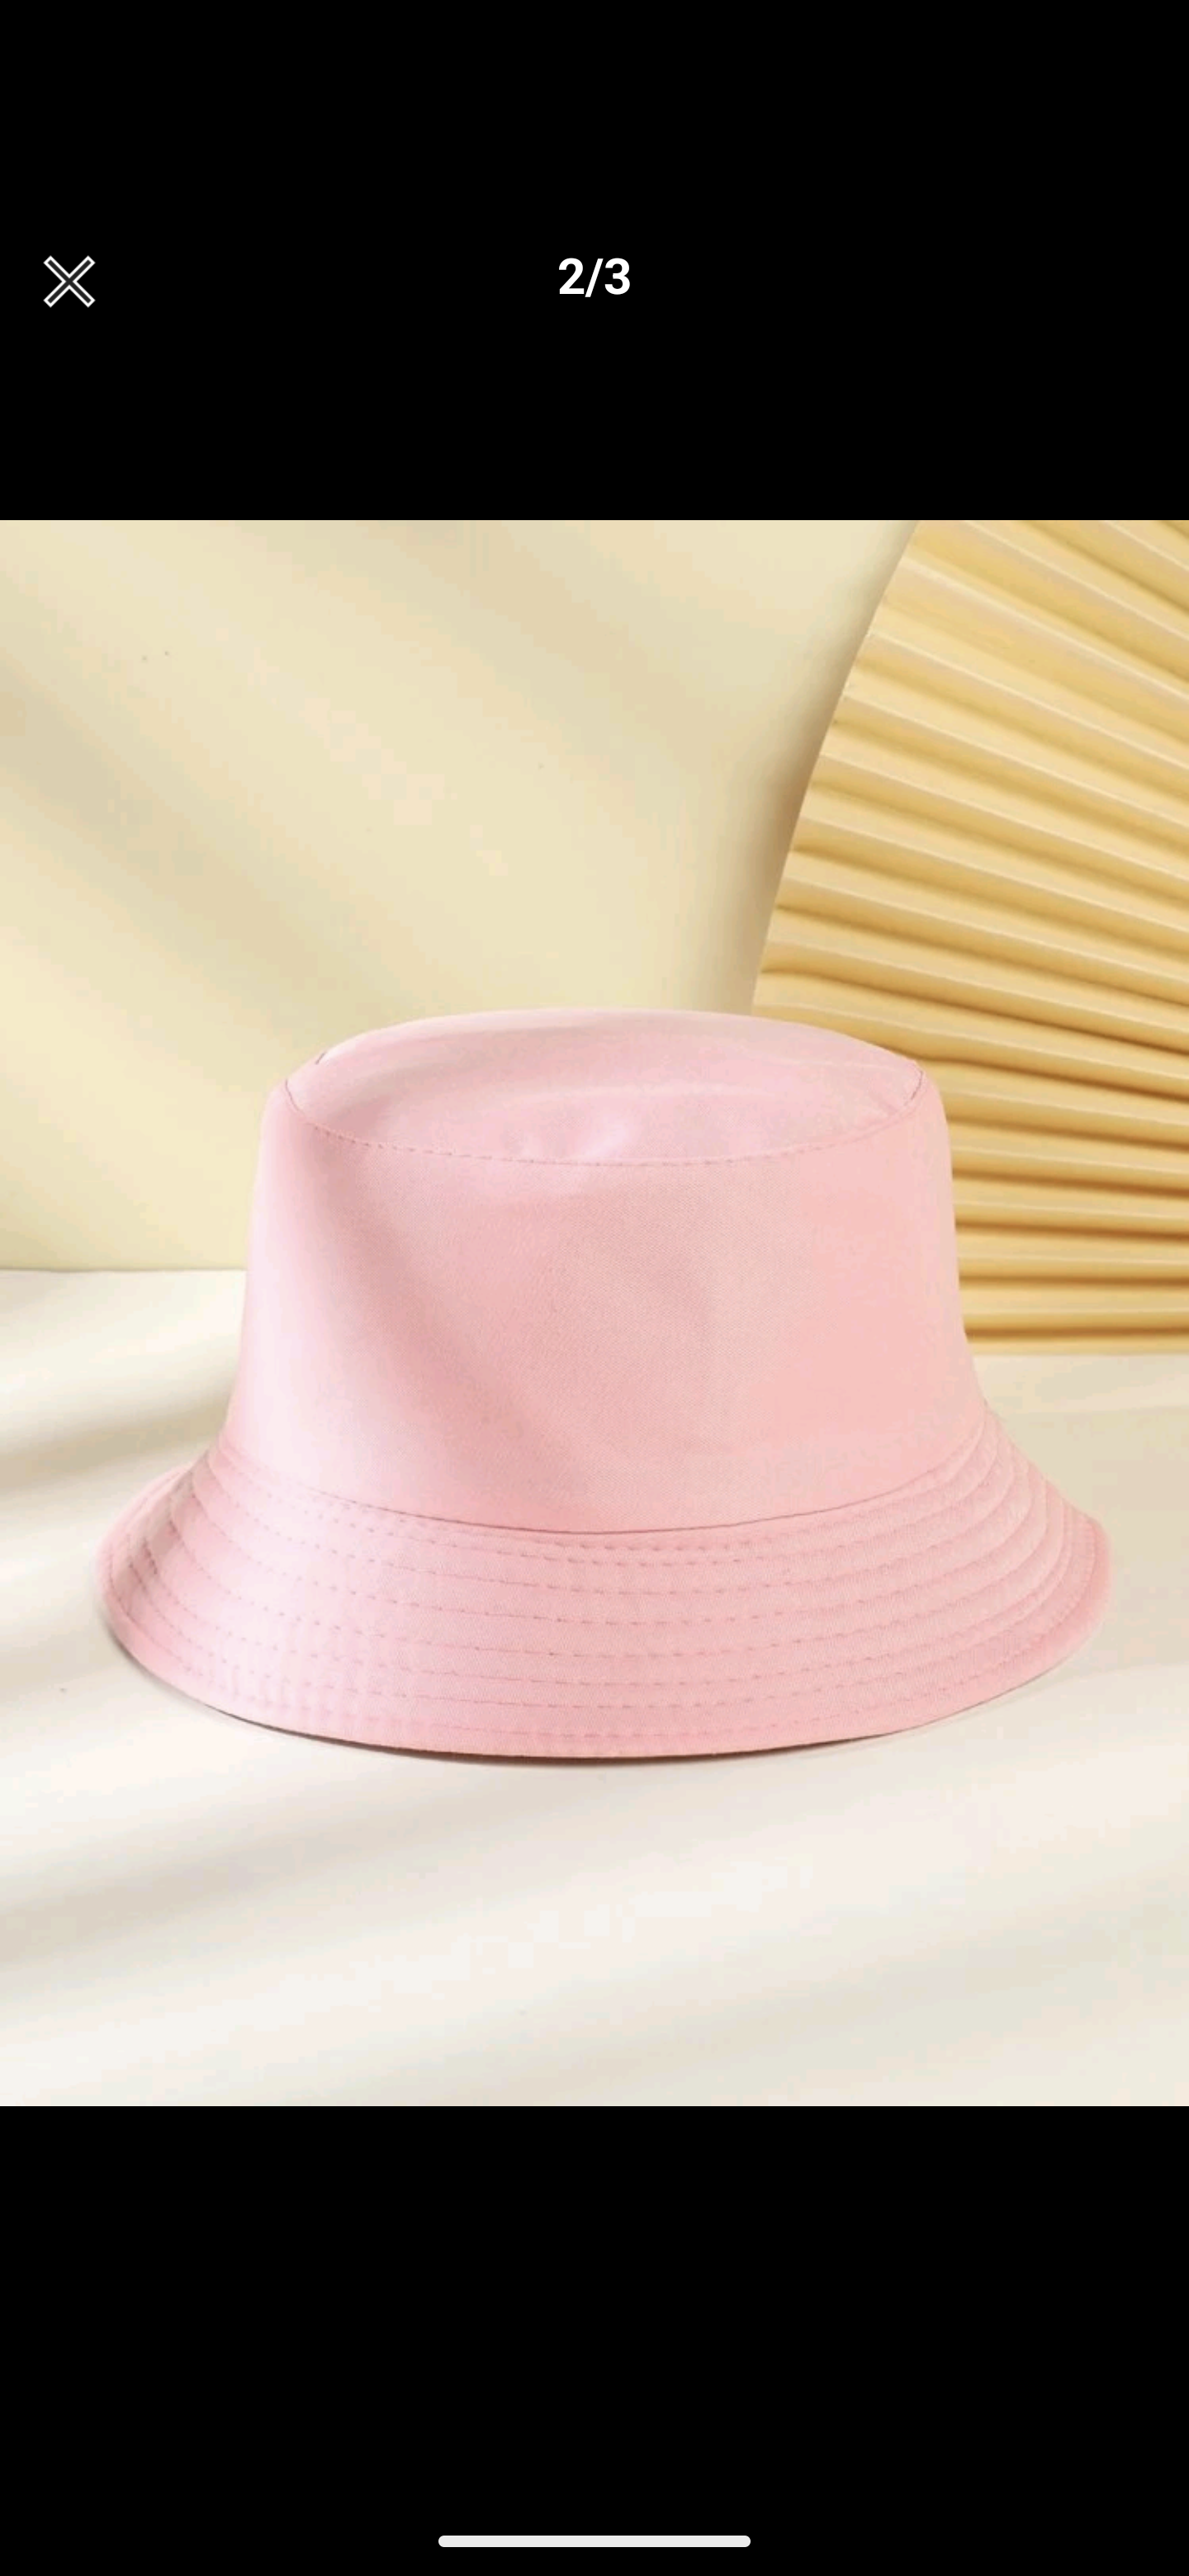 Bucket hats